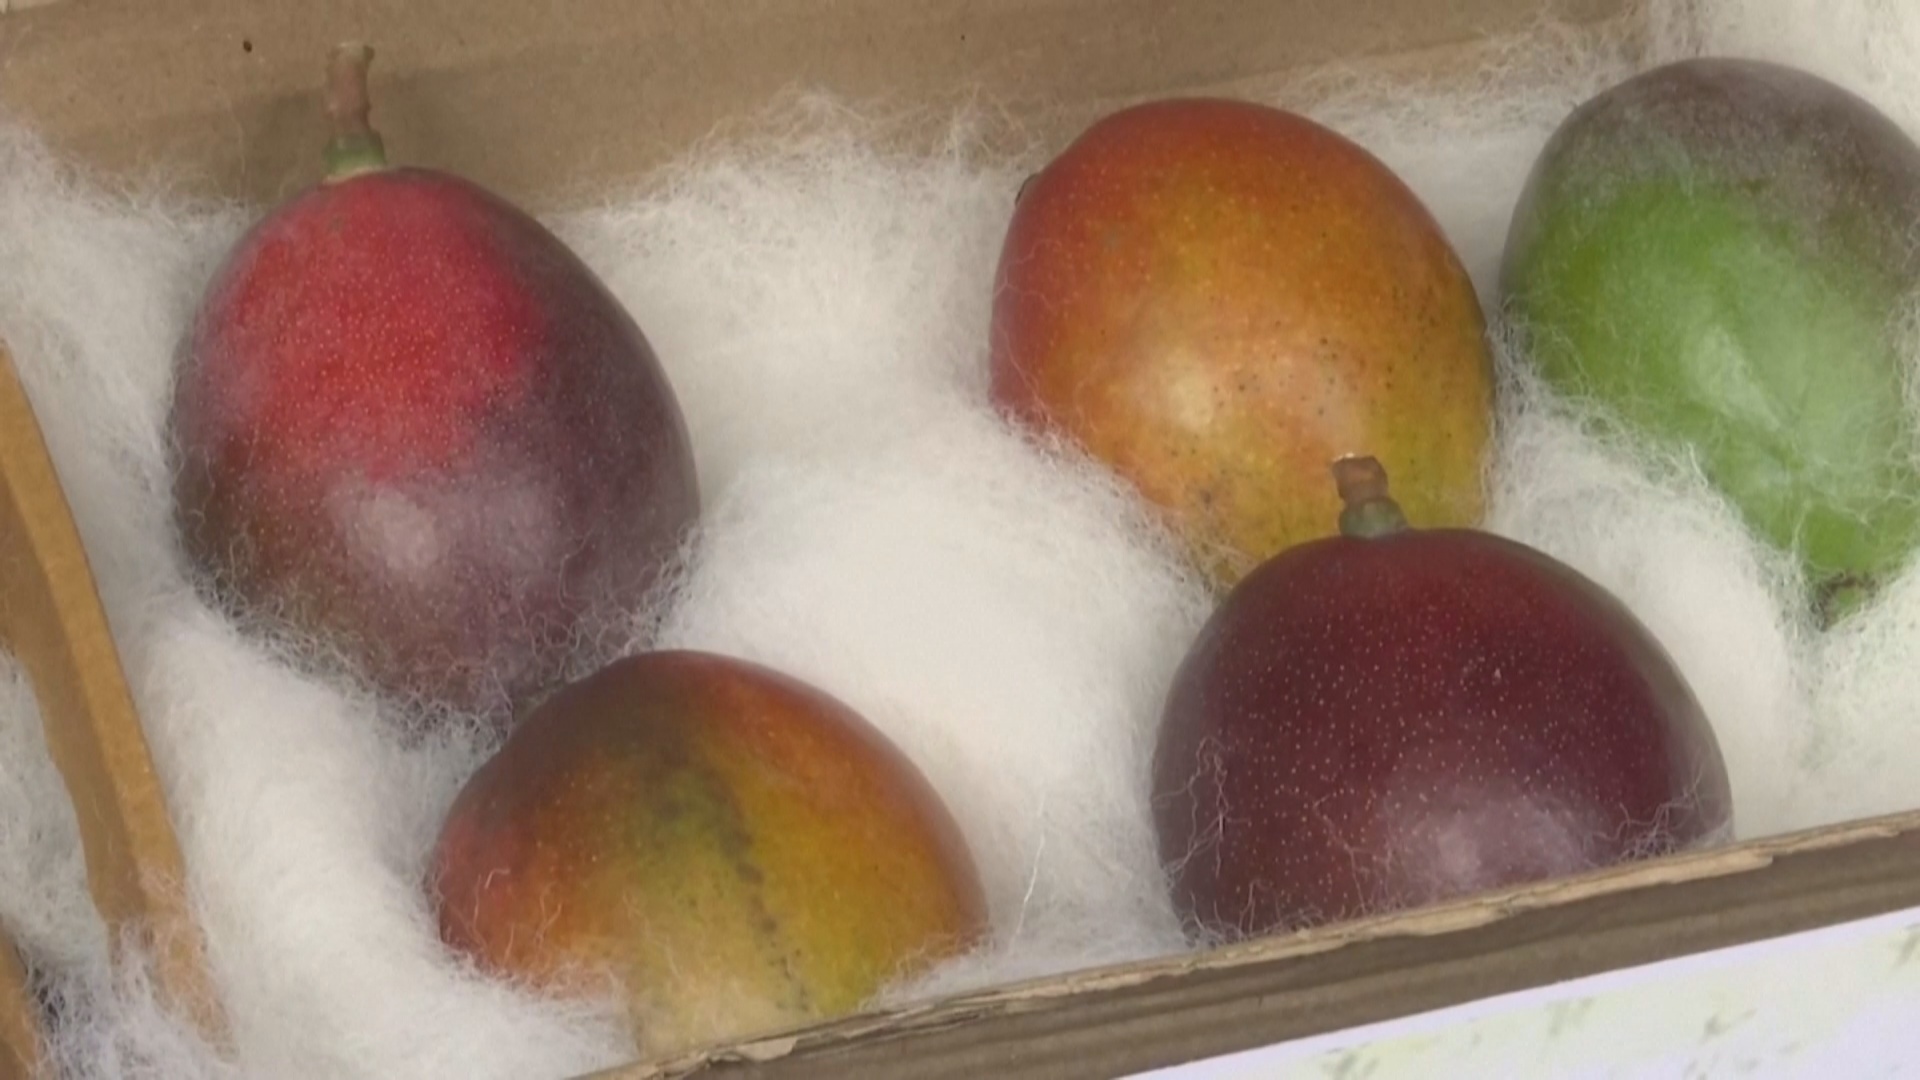 $1200 за манго: фрукты по цене iPhone 13 продают на фестивале в Индии